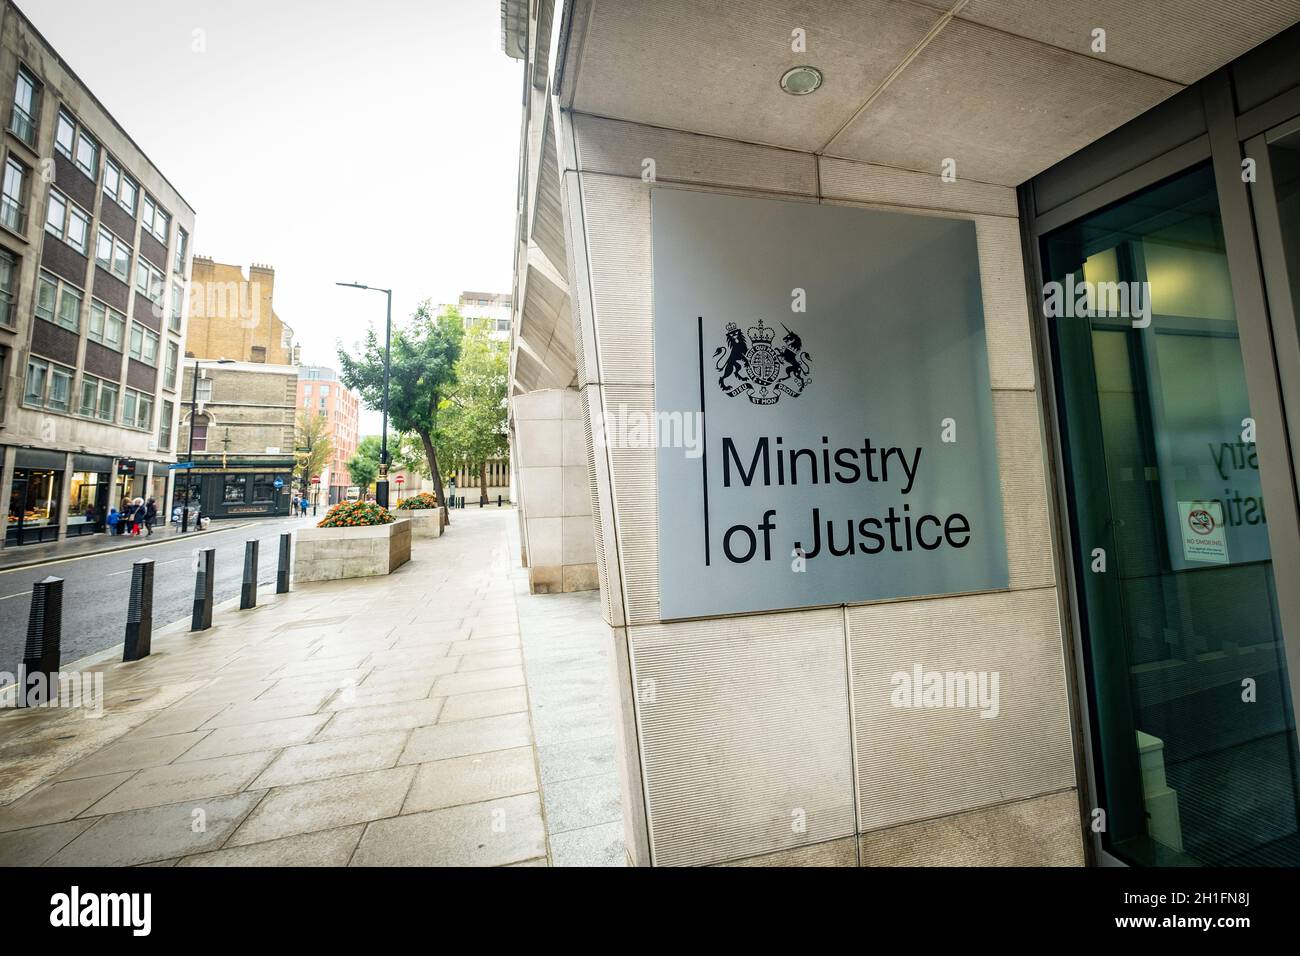 Westminster London- signalisation du ministère de la Justice.Bâtiment du gouvernement du Royaume-Uni Banque D'Images